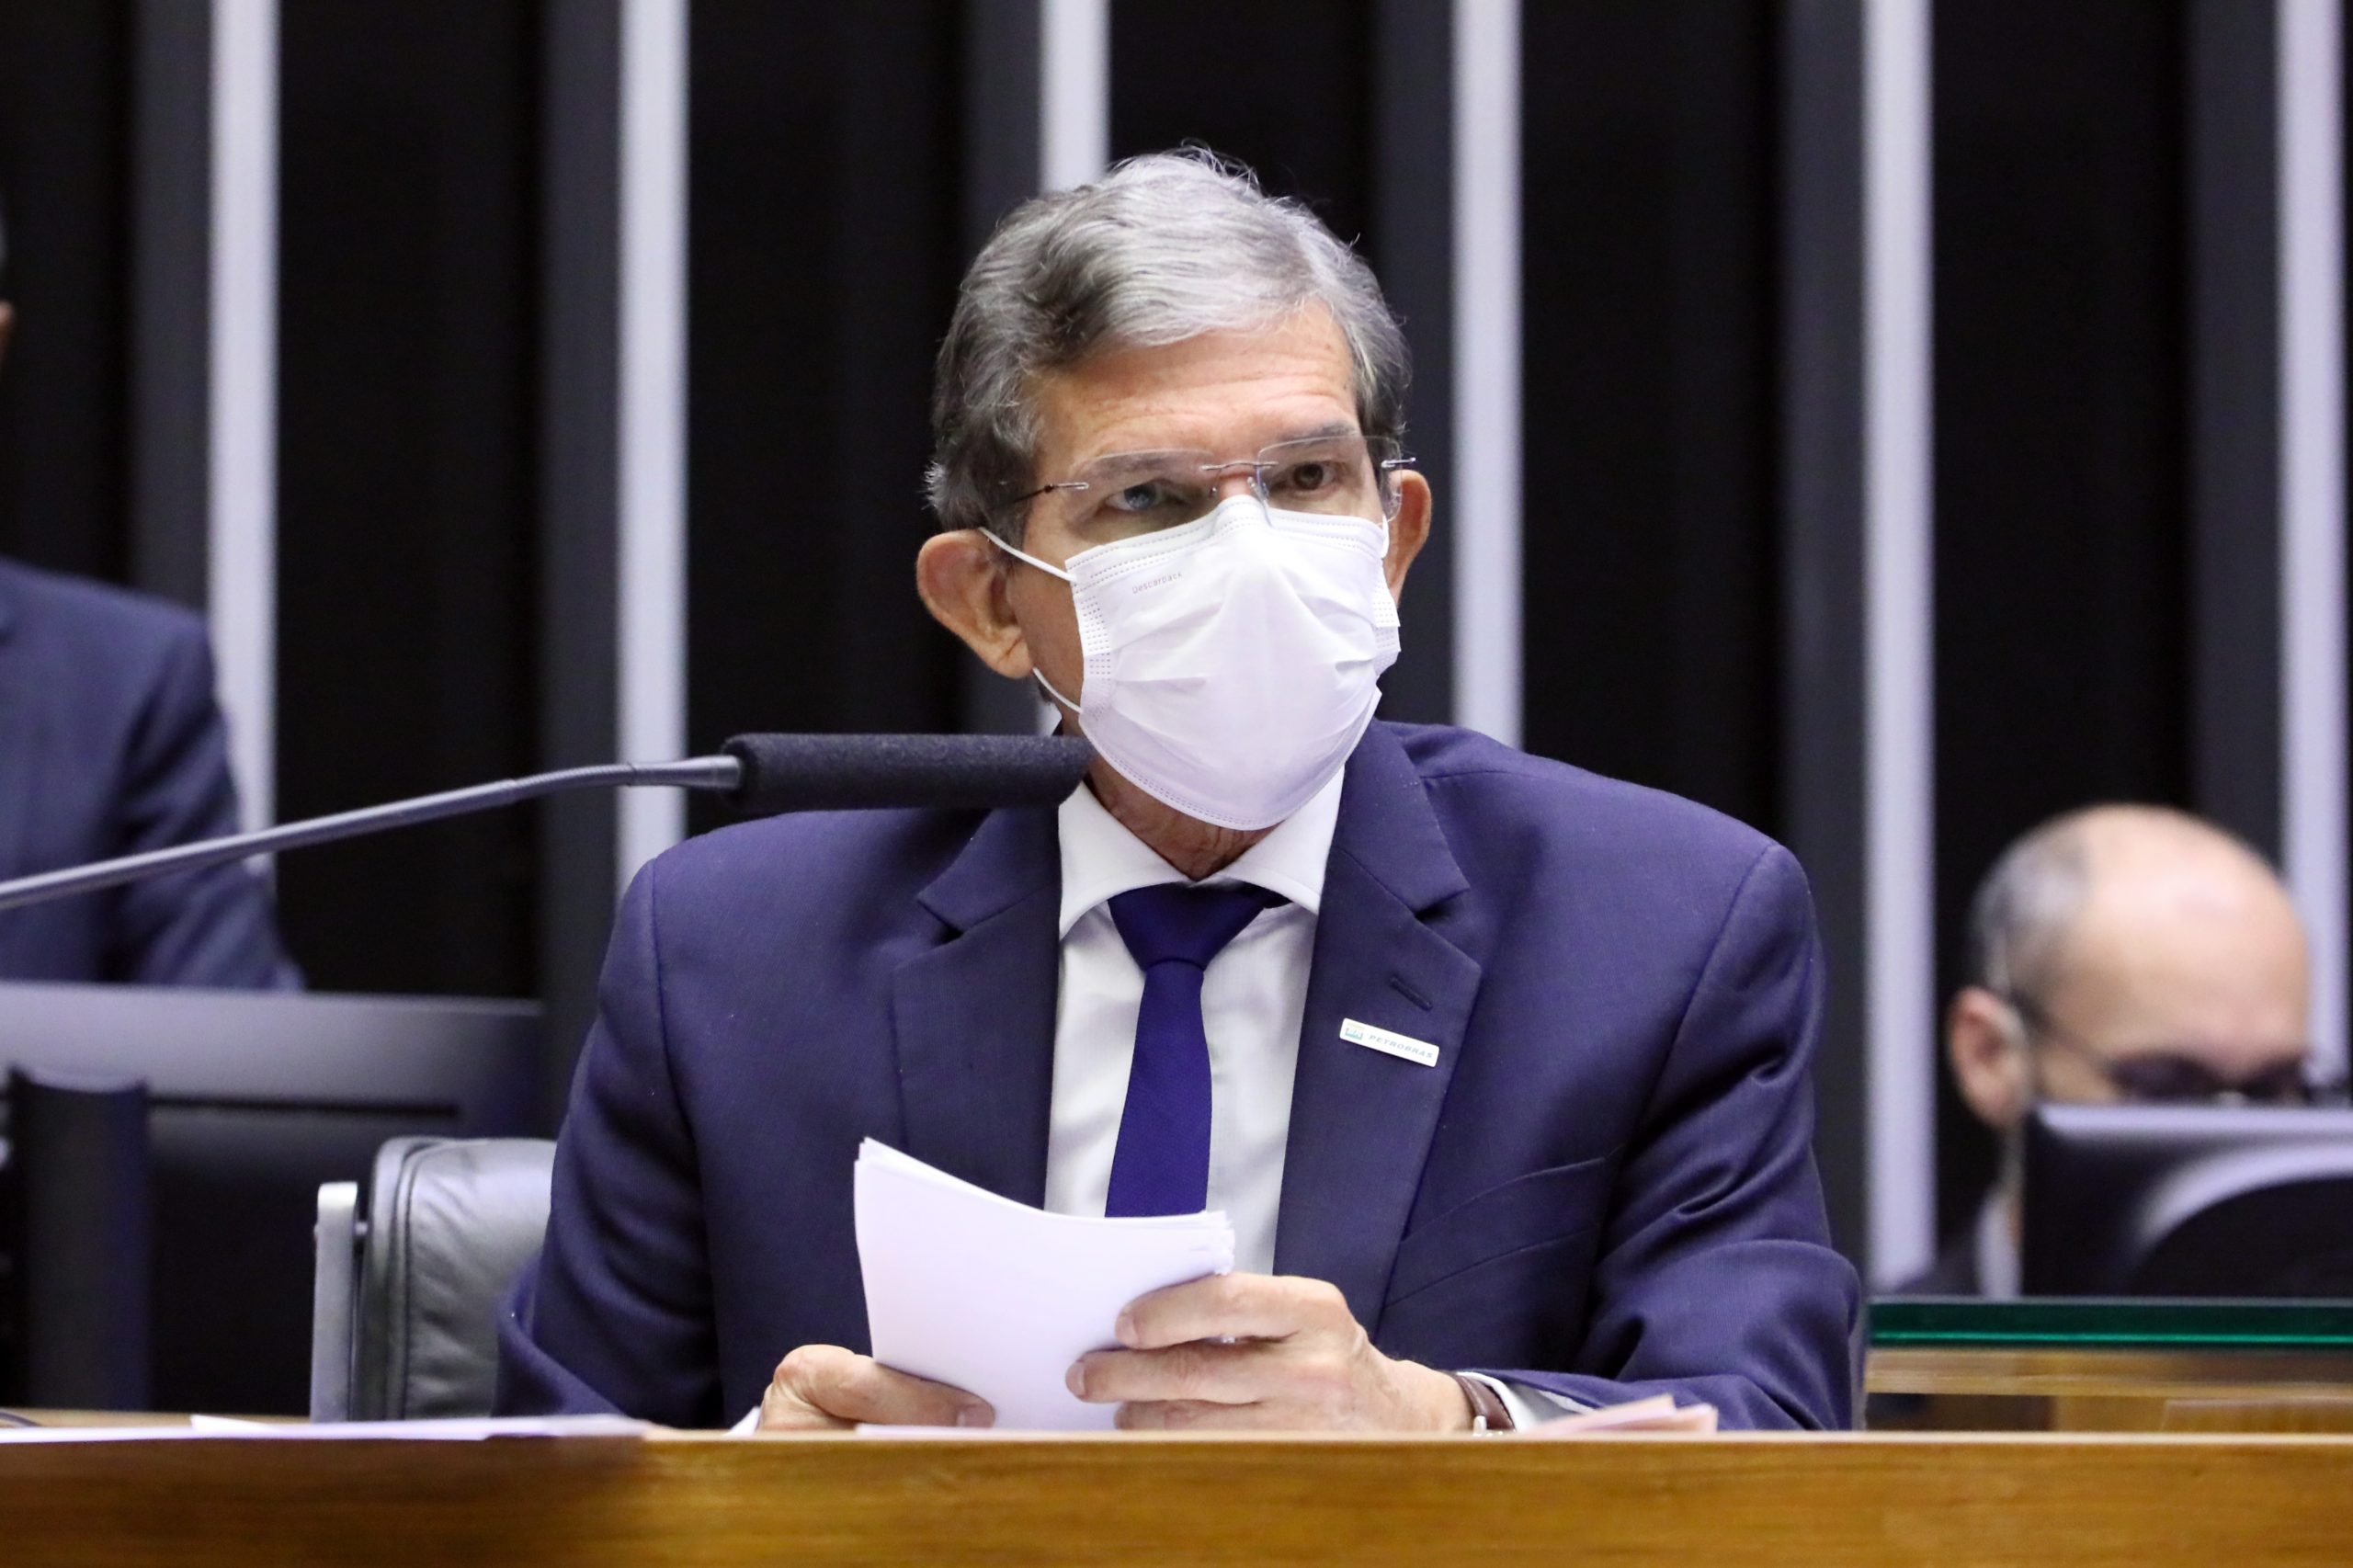 Presidente da Petrobrás, General Joaquim Silva e Luna, em audiência na Câmara dos Deputados, sentado e usando máscara